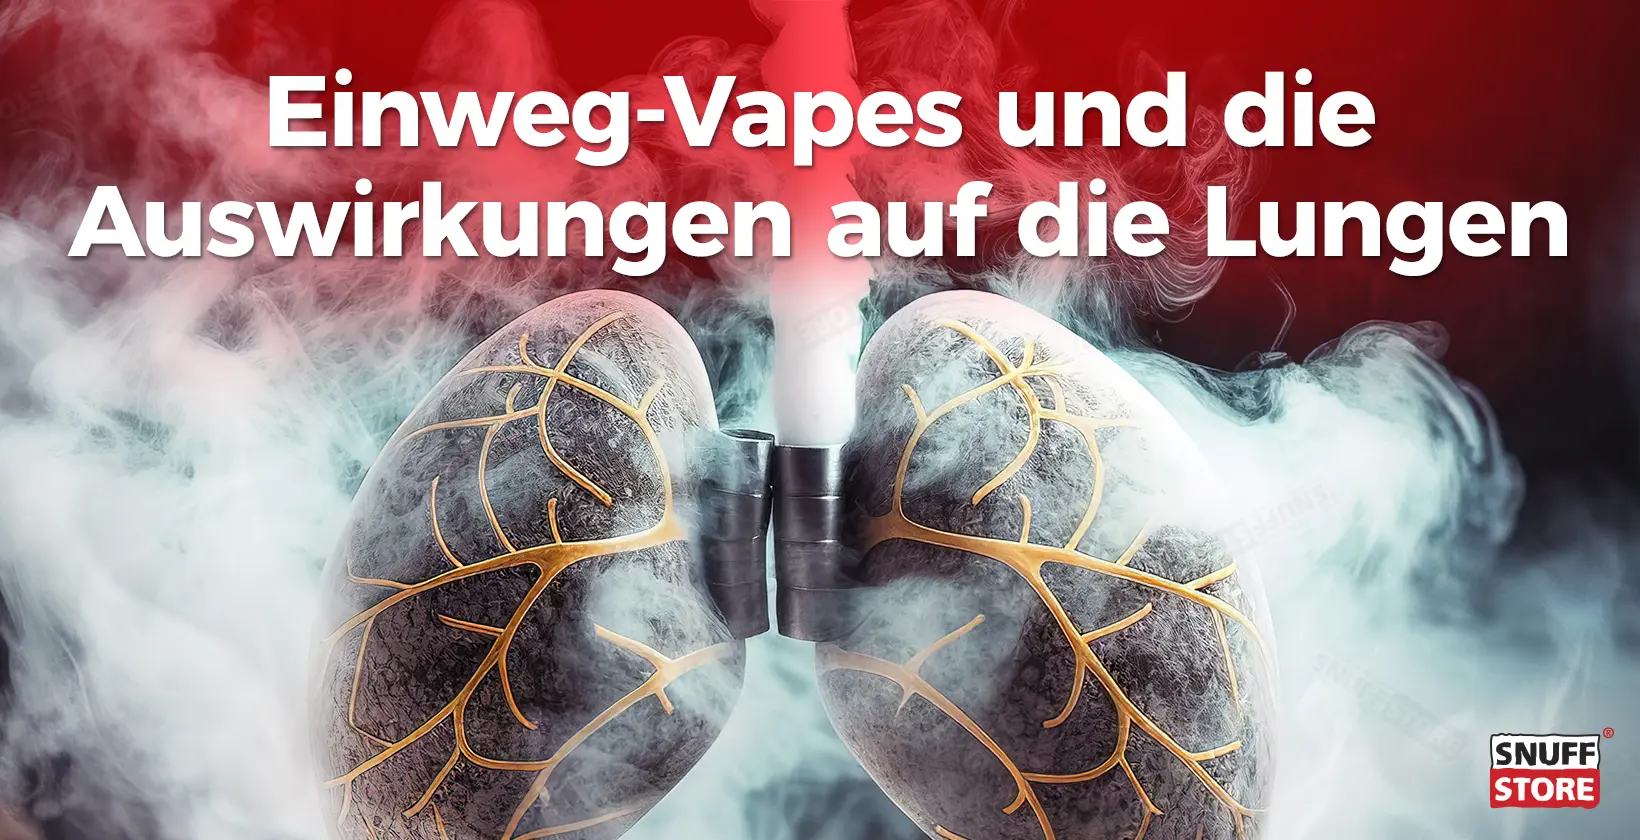 Einweg-Vapes und die Auswirkungen auf die Lungen